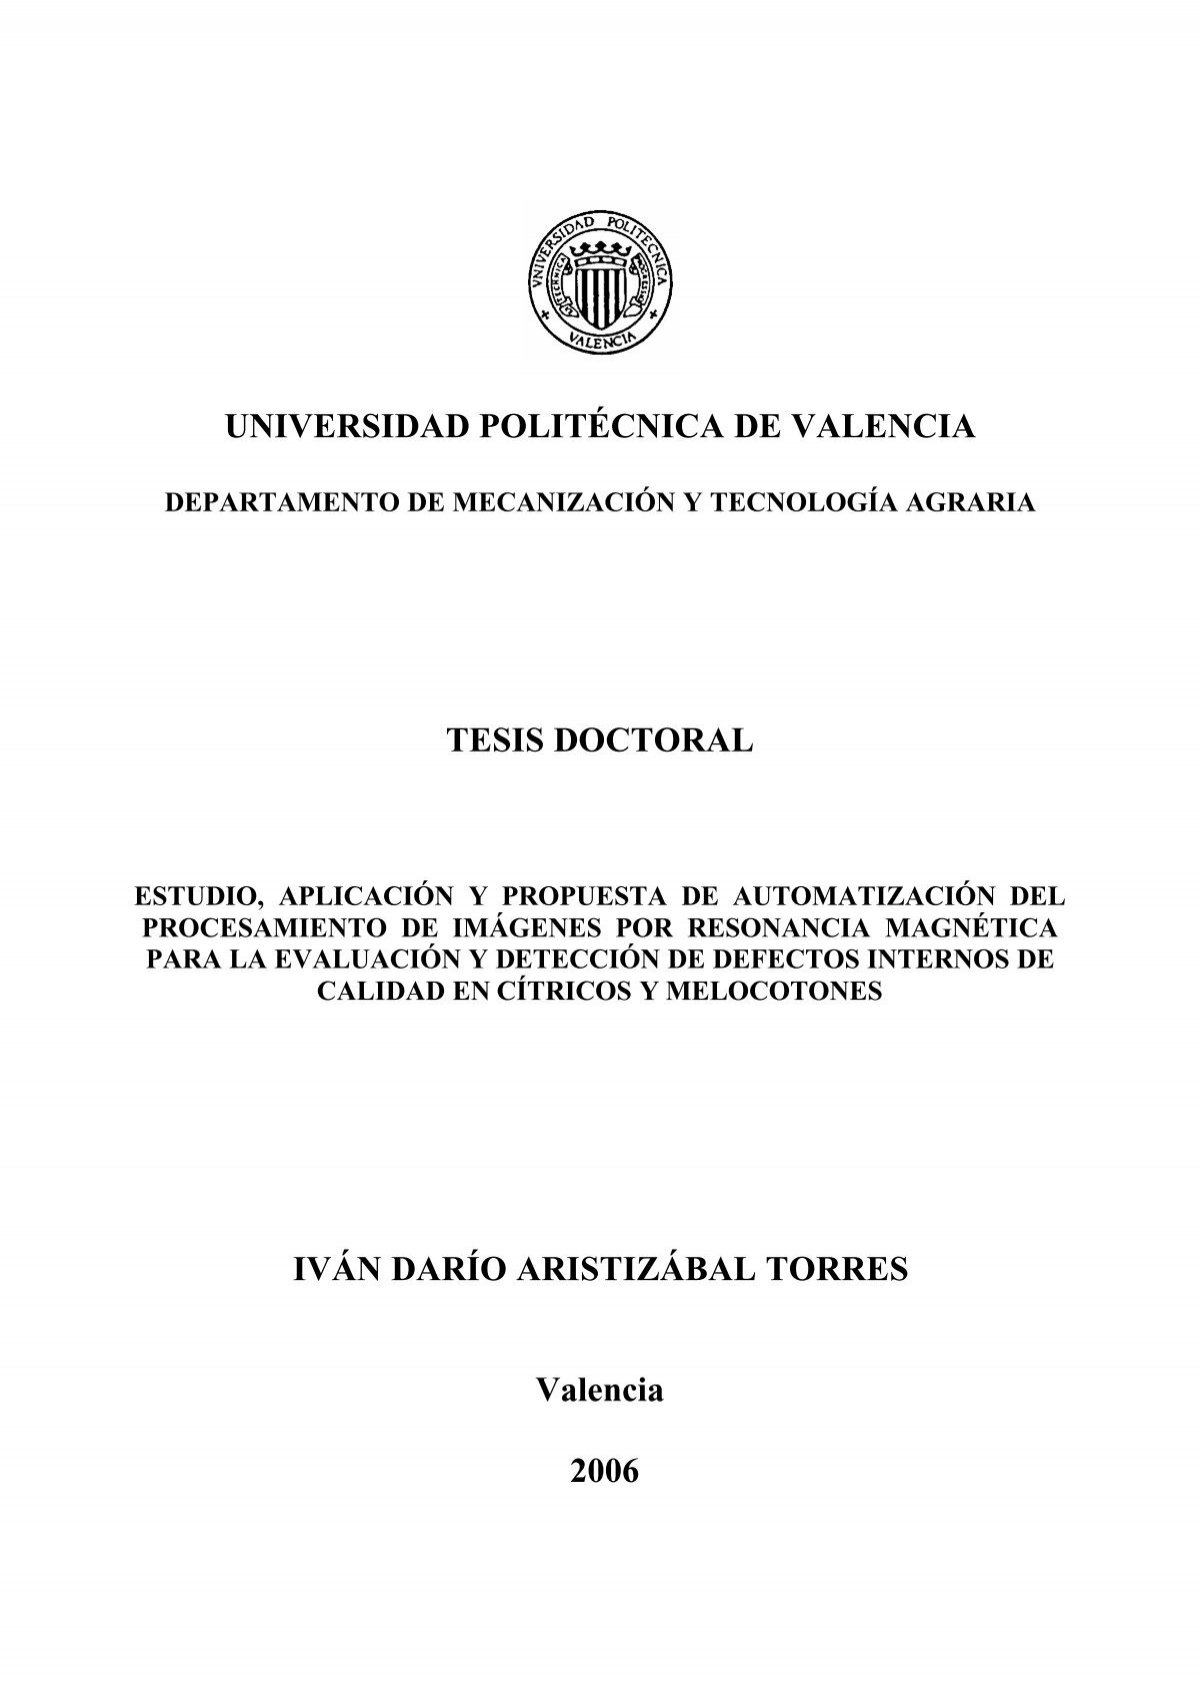 UNIVERSIDAD POLITÉCNICA DE VALENCIA TESIS DOCTORAL